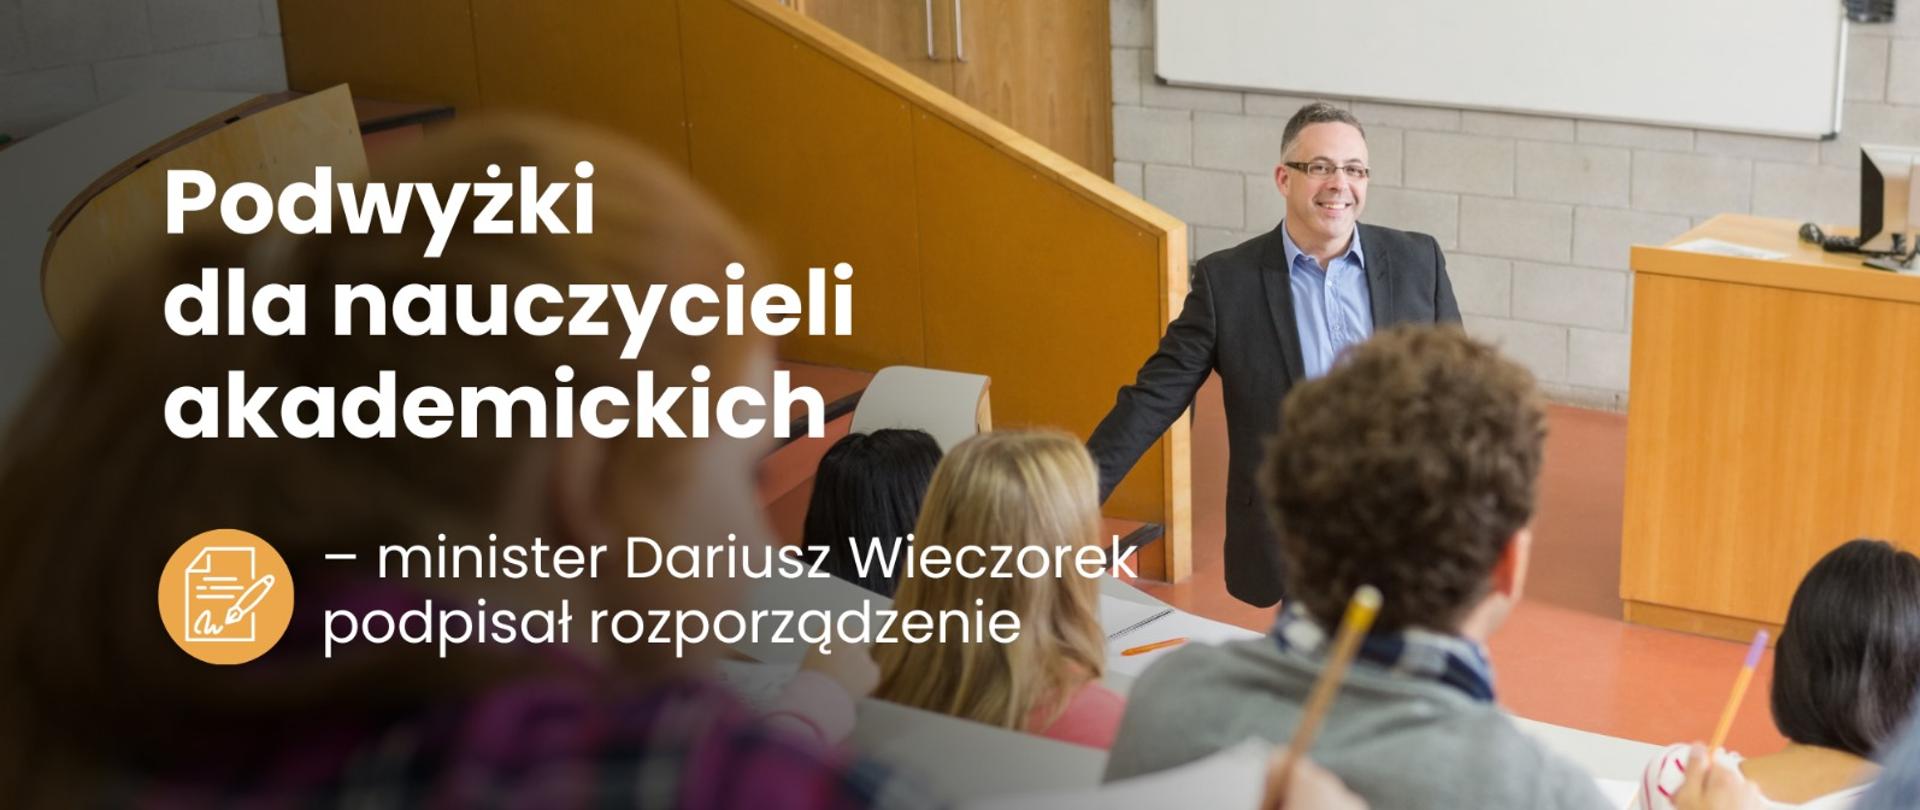 Na sali wykładowca mówi do studentów, obok napis Podwyżki dla nauczycieli akademickich – minister Wieczorek podpisał rozporządzenie.